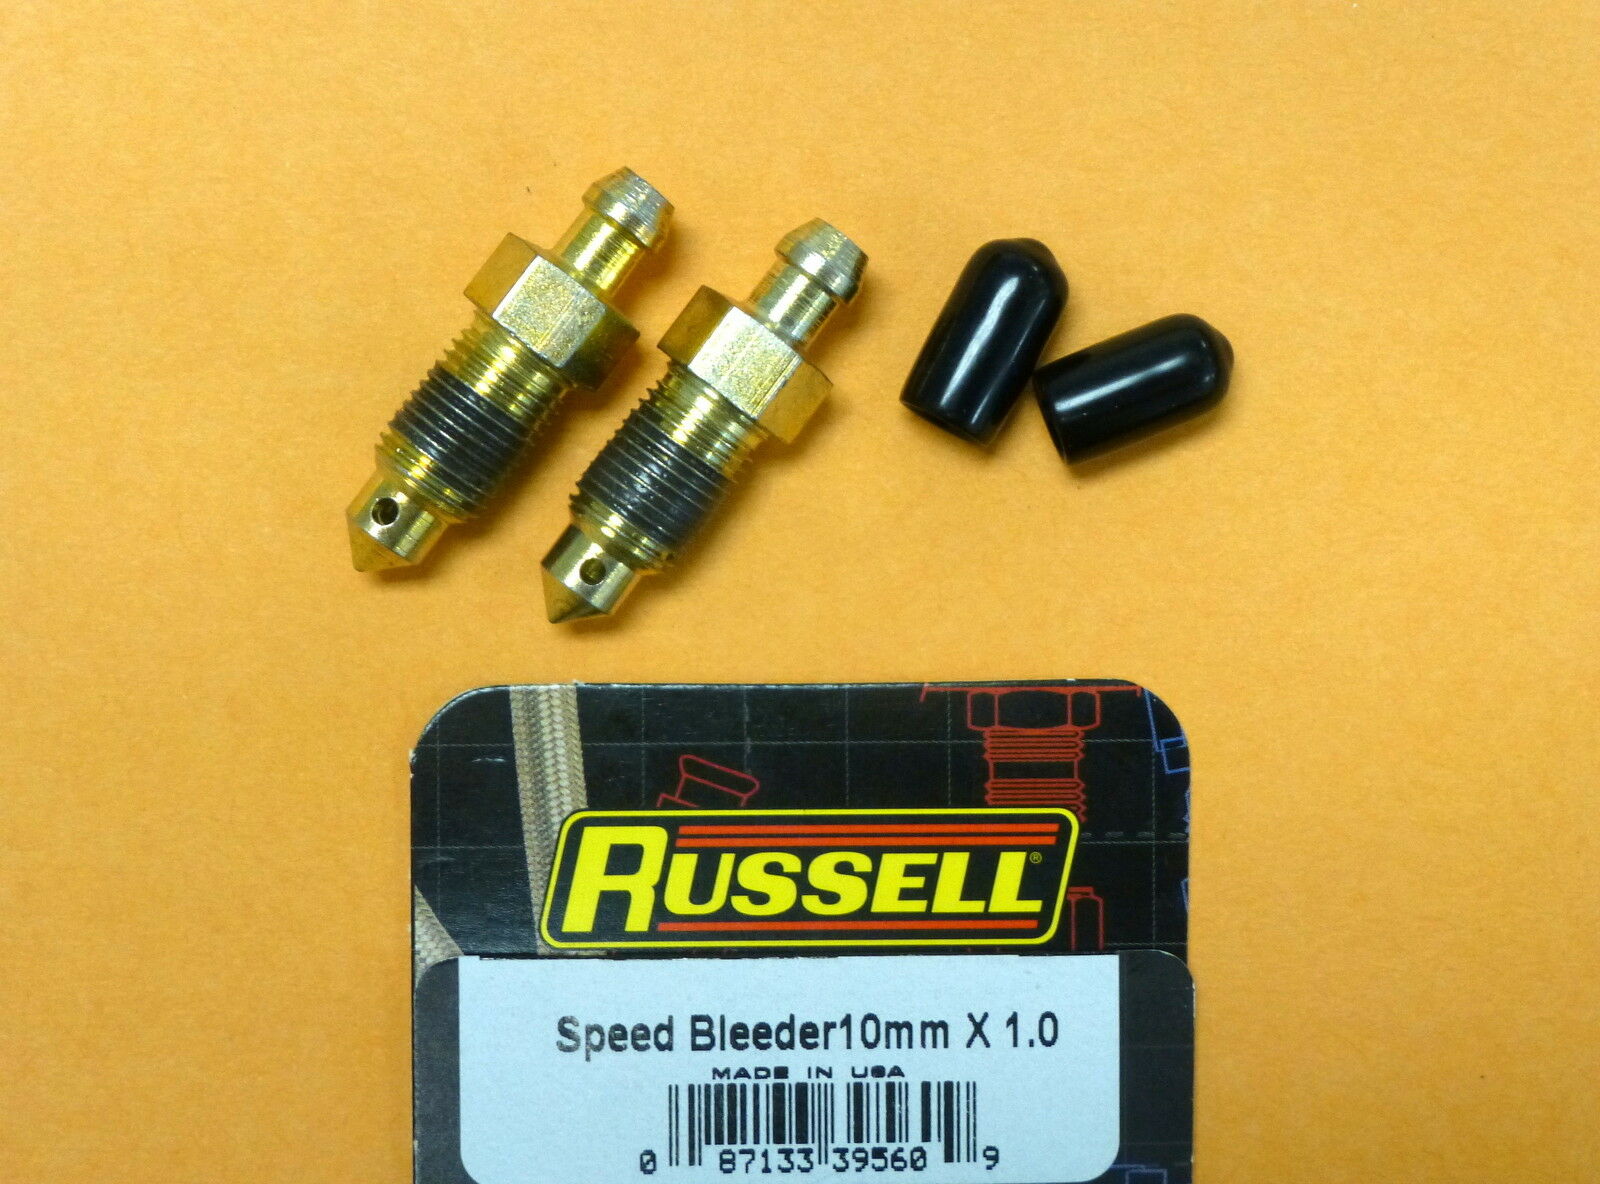 Russell 639560 Speed Bleeder 10 Mm X 1.0 Mm Thread 35 Mm Overall Length 2 Pcs